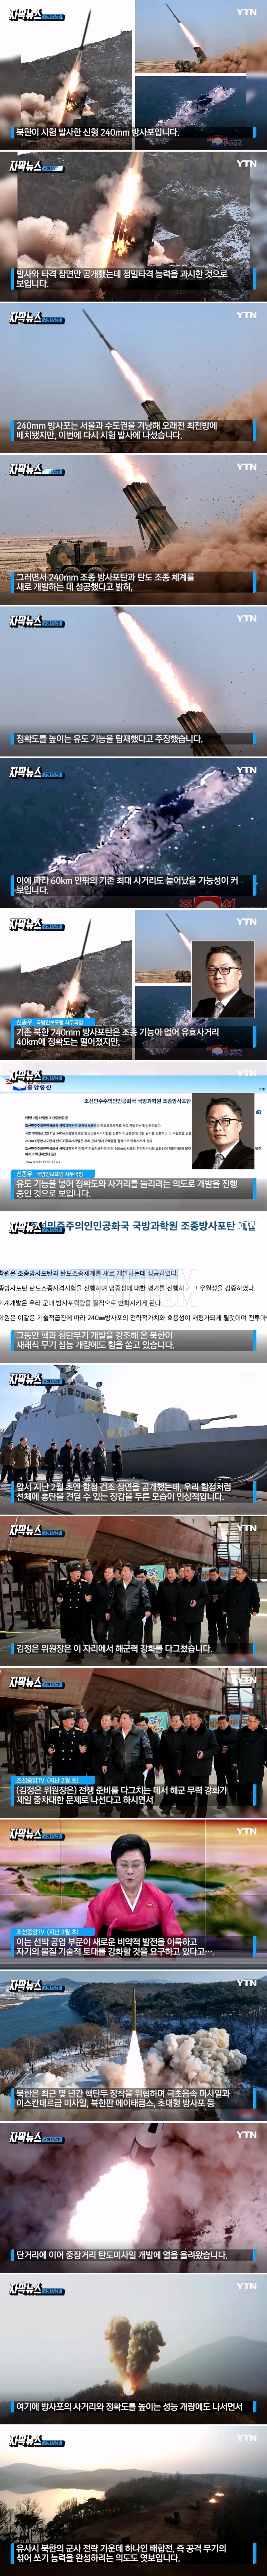 북한, 최근 또 다른 움직임.',섞어 쏘기', 능력 완성 의도.jpg